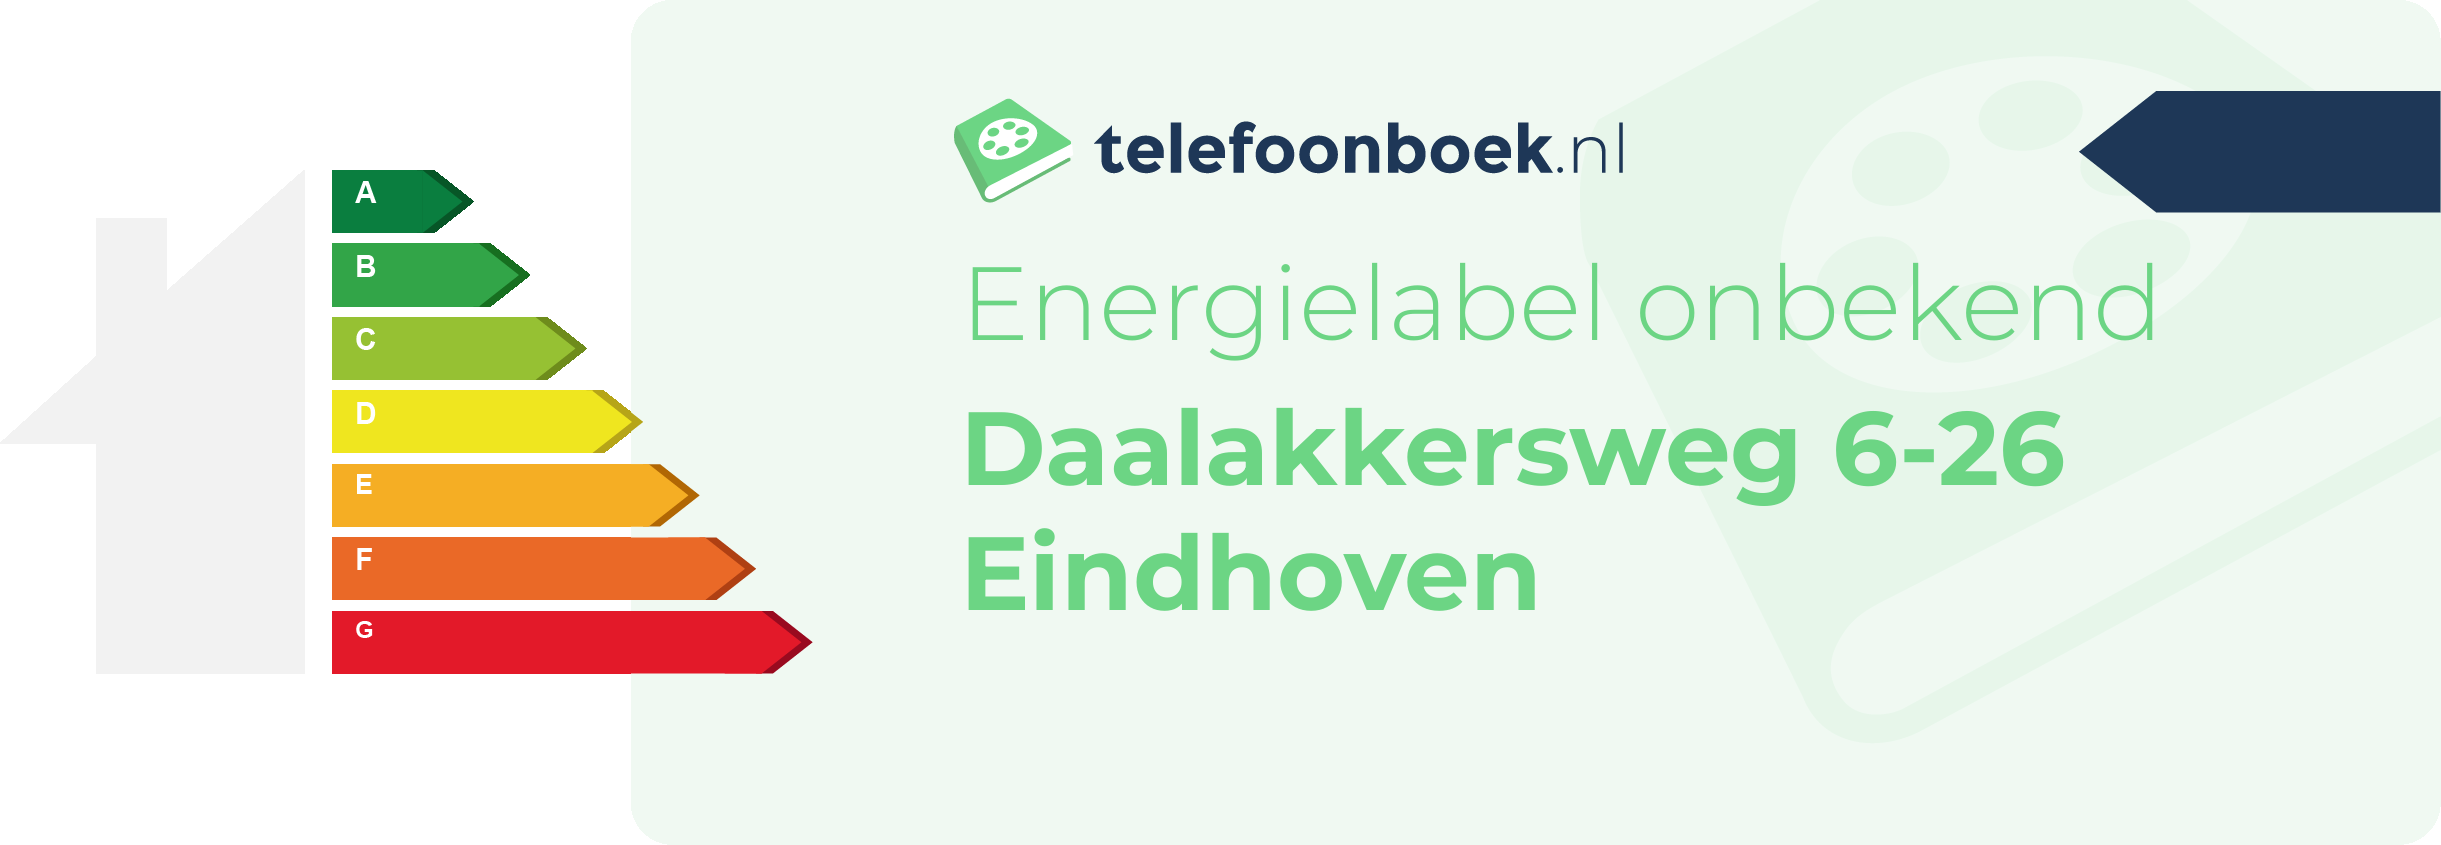 Energielabel Daalakkersweg 6-26 Eindhoven